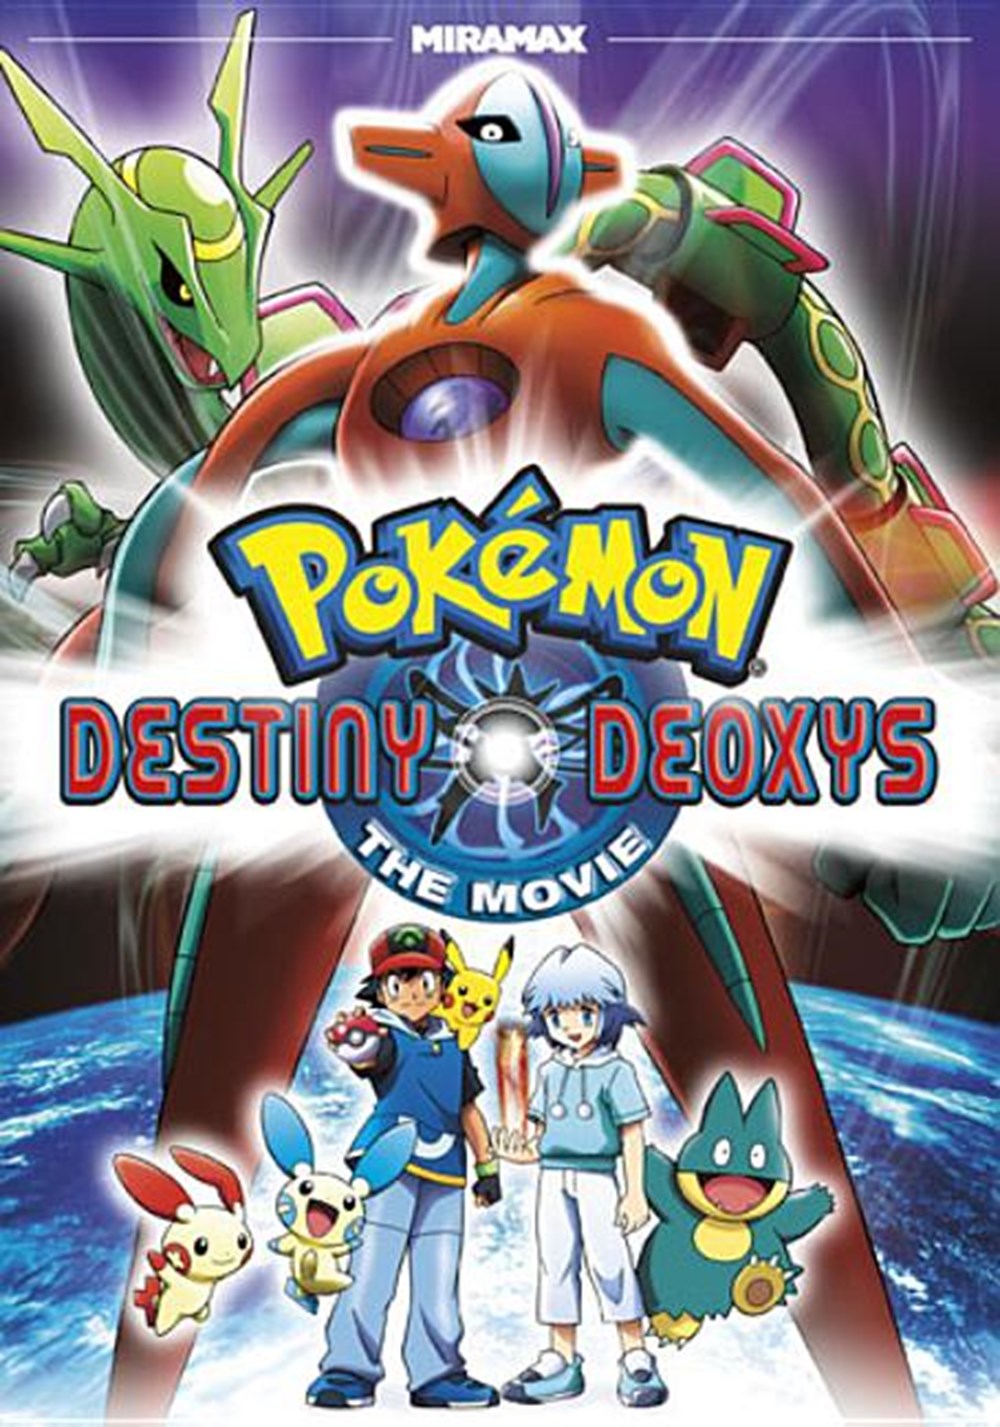 Pokemon Destiny Deoxys the Movie